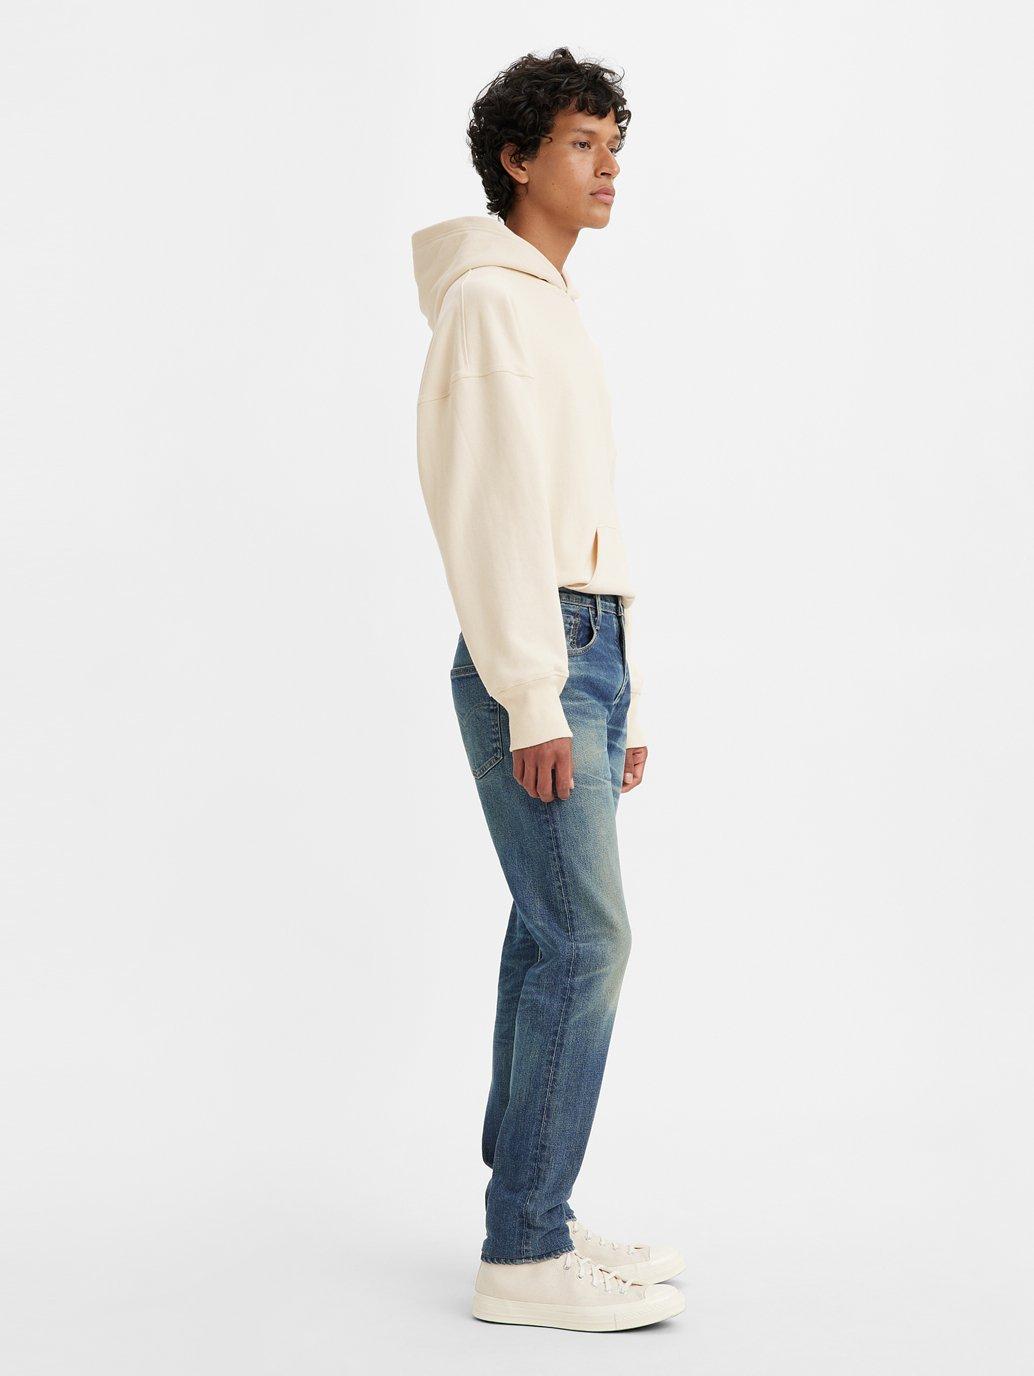 Buy Levi's® Made in Japan Men's 512™ Slim Taper Jeans | Levi’s ...